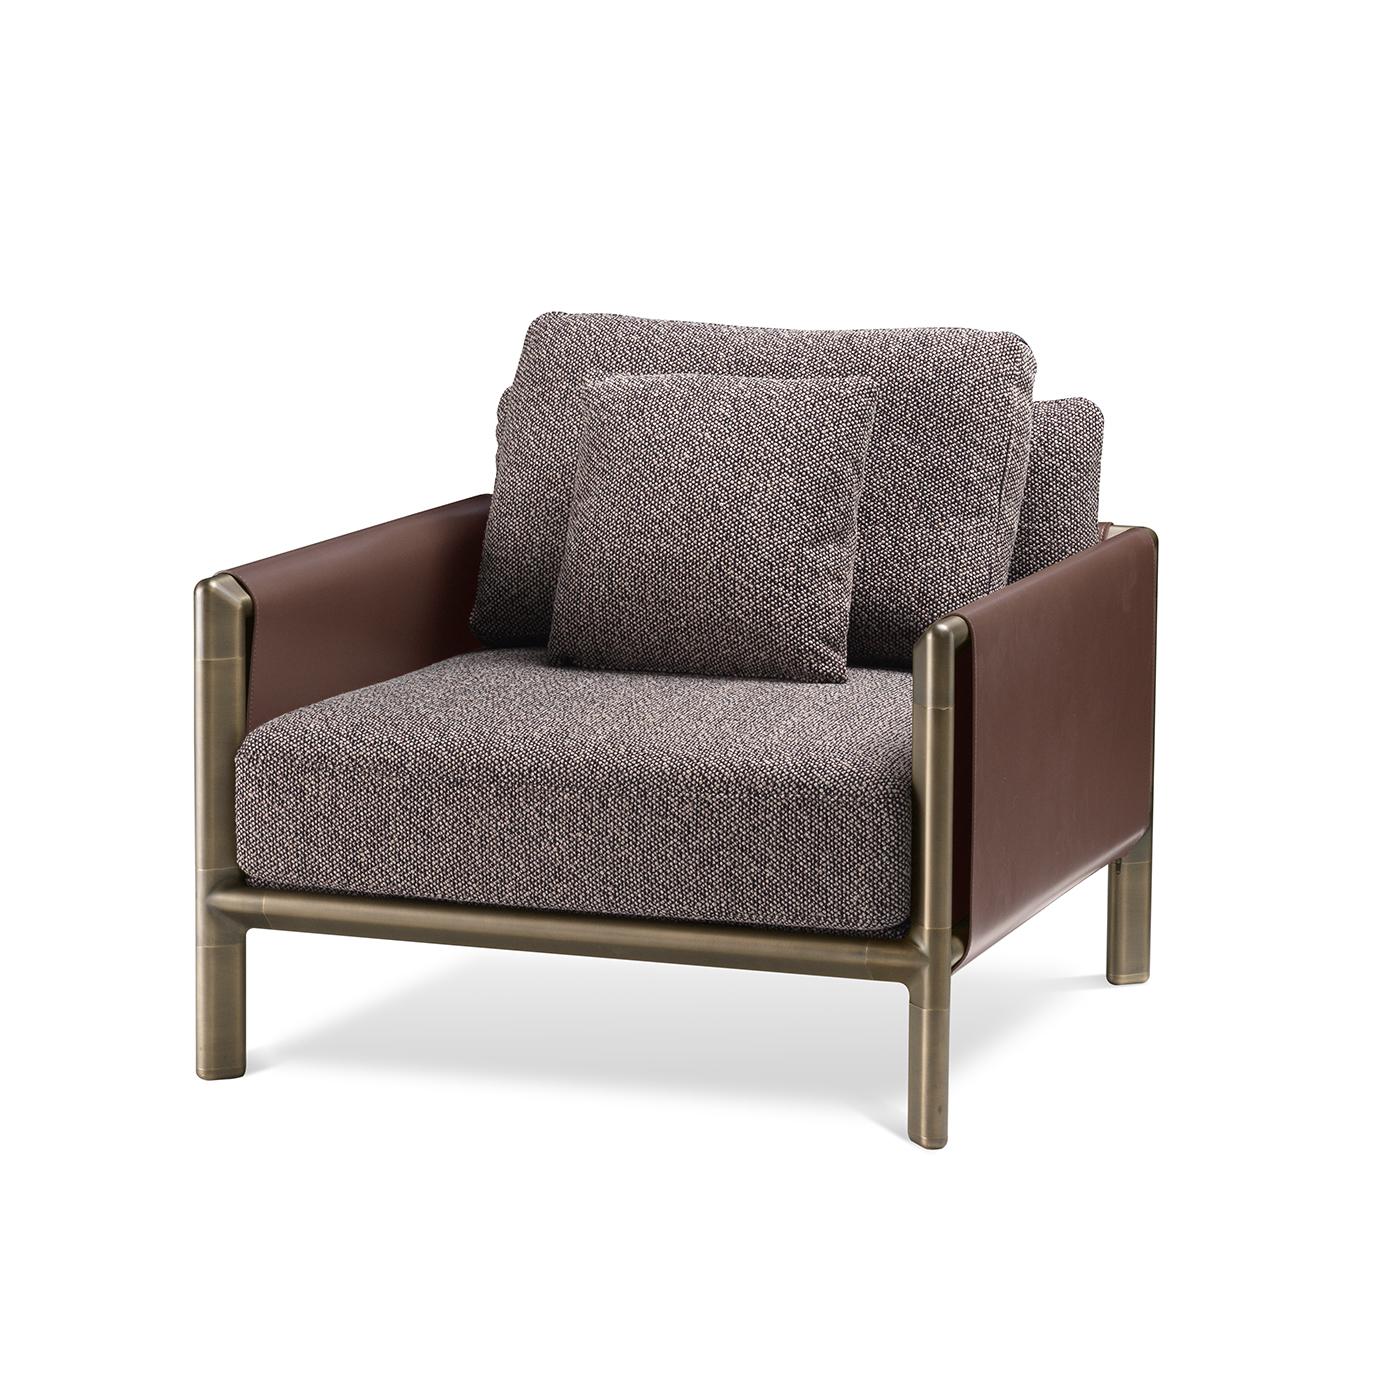 Klassische Inspiration und modernes Flair verschmelzen in diesem raffinierten Design: ein minimalistischer, kompakter und kühner Sessel, der aus hochwertigen Materialien gefertigt ist. Er ruht auf einer Messingstruktur mit dicken und geraden Linien